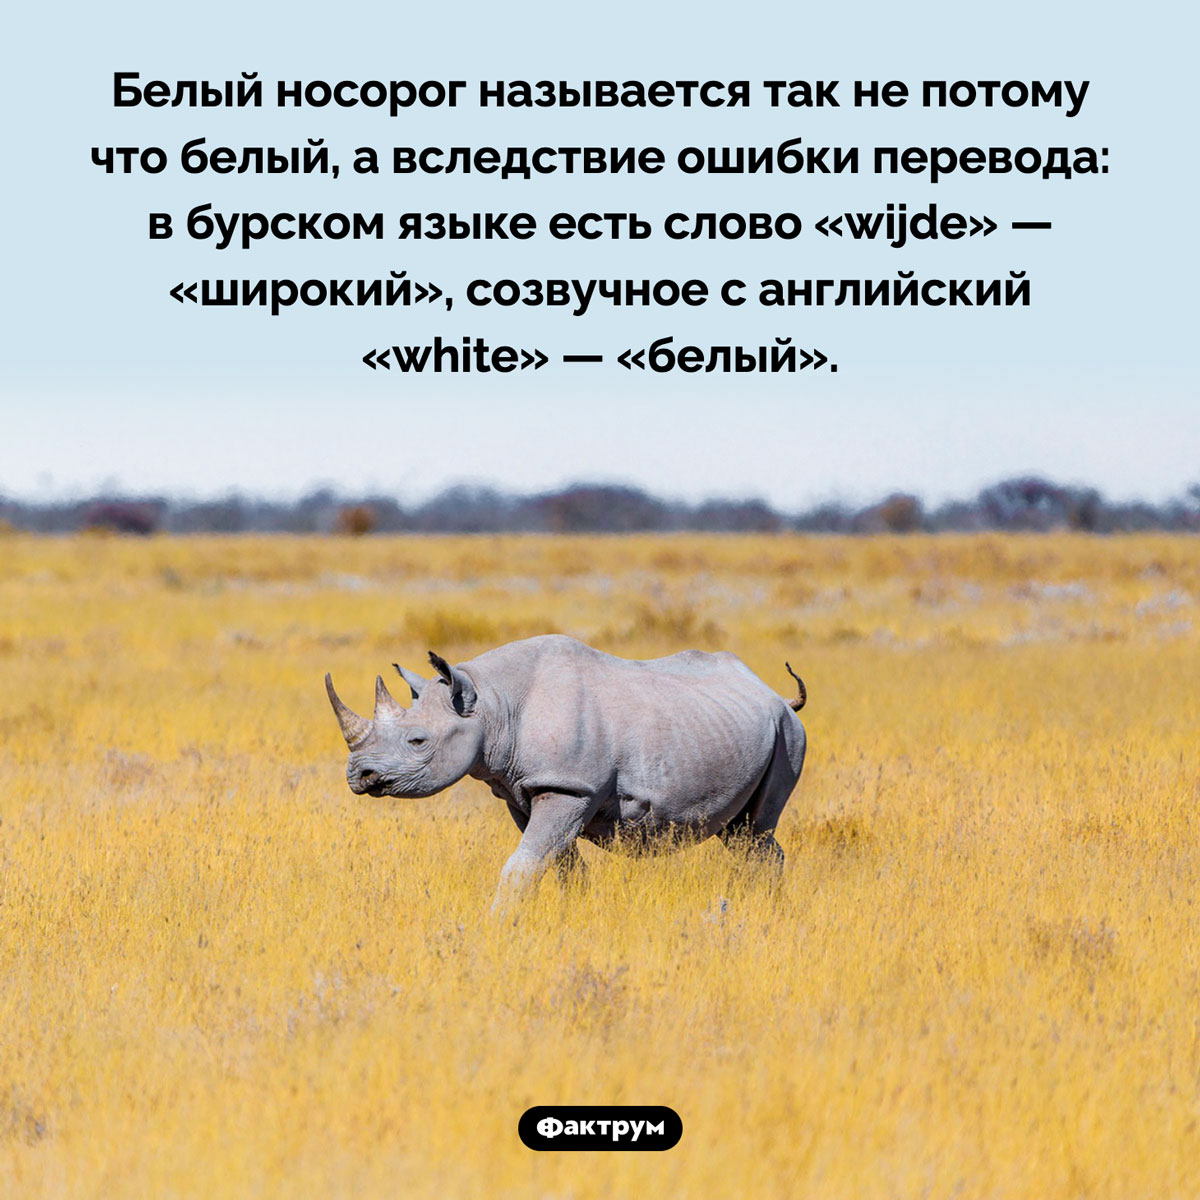 Белый носорог —  вовсе не белый. Белый носорог называется так не потому что белый, а вследствие ошибки перевода: в бурском языке есть слово «wijde» — «широкий», созвучное с английский «white» — «белый».